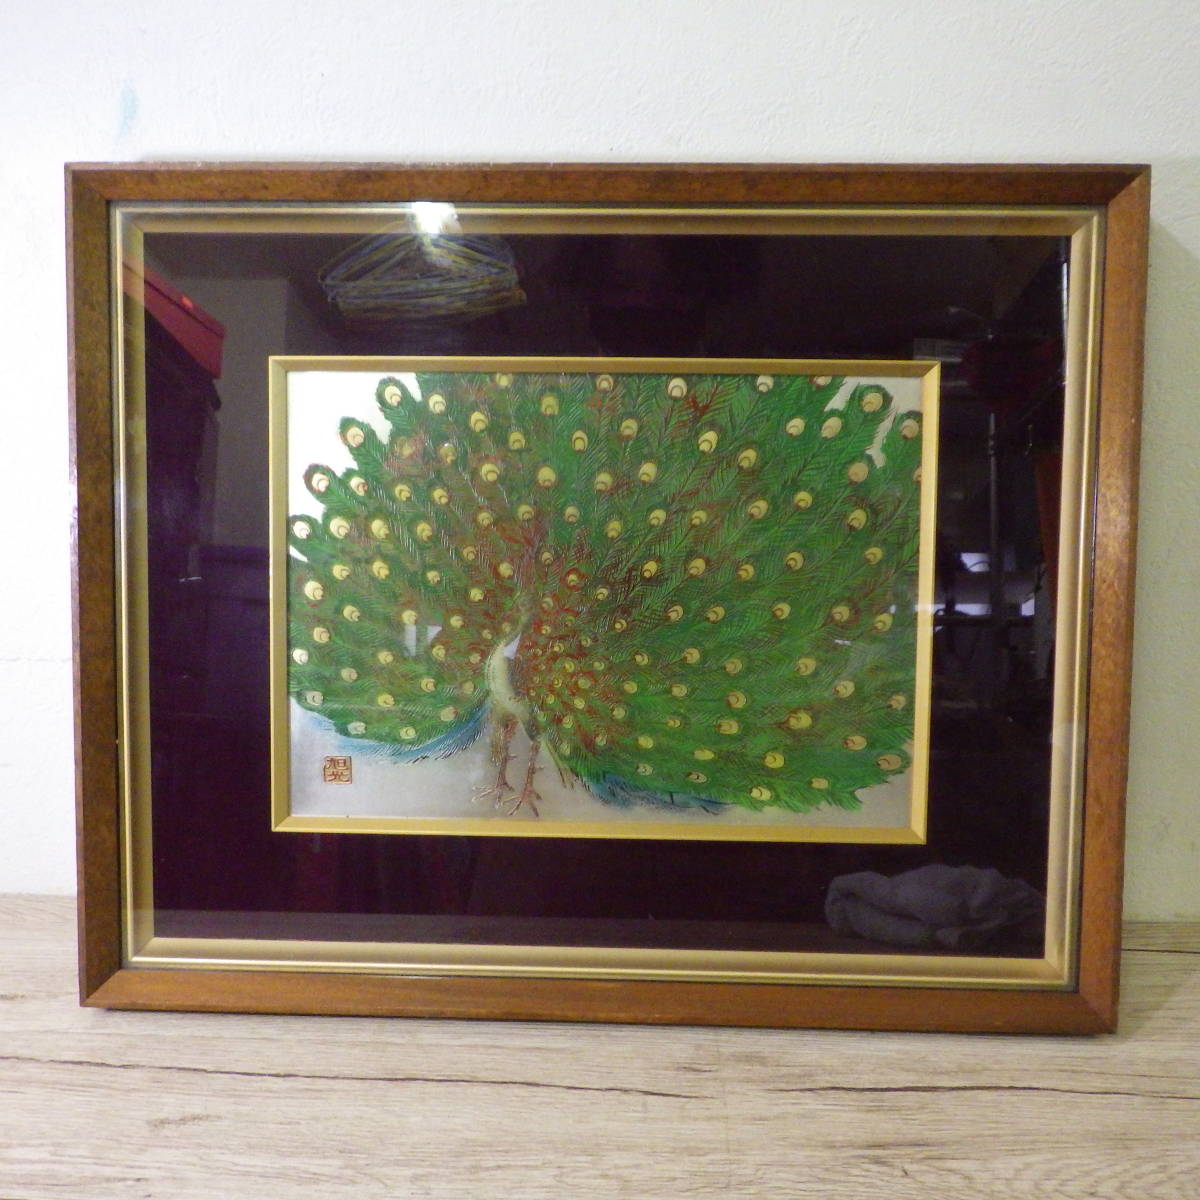 아사히코 공작 프레임 크기 약. 52.5×42.5cm, 삽화, 그림, 다른 사람